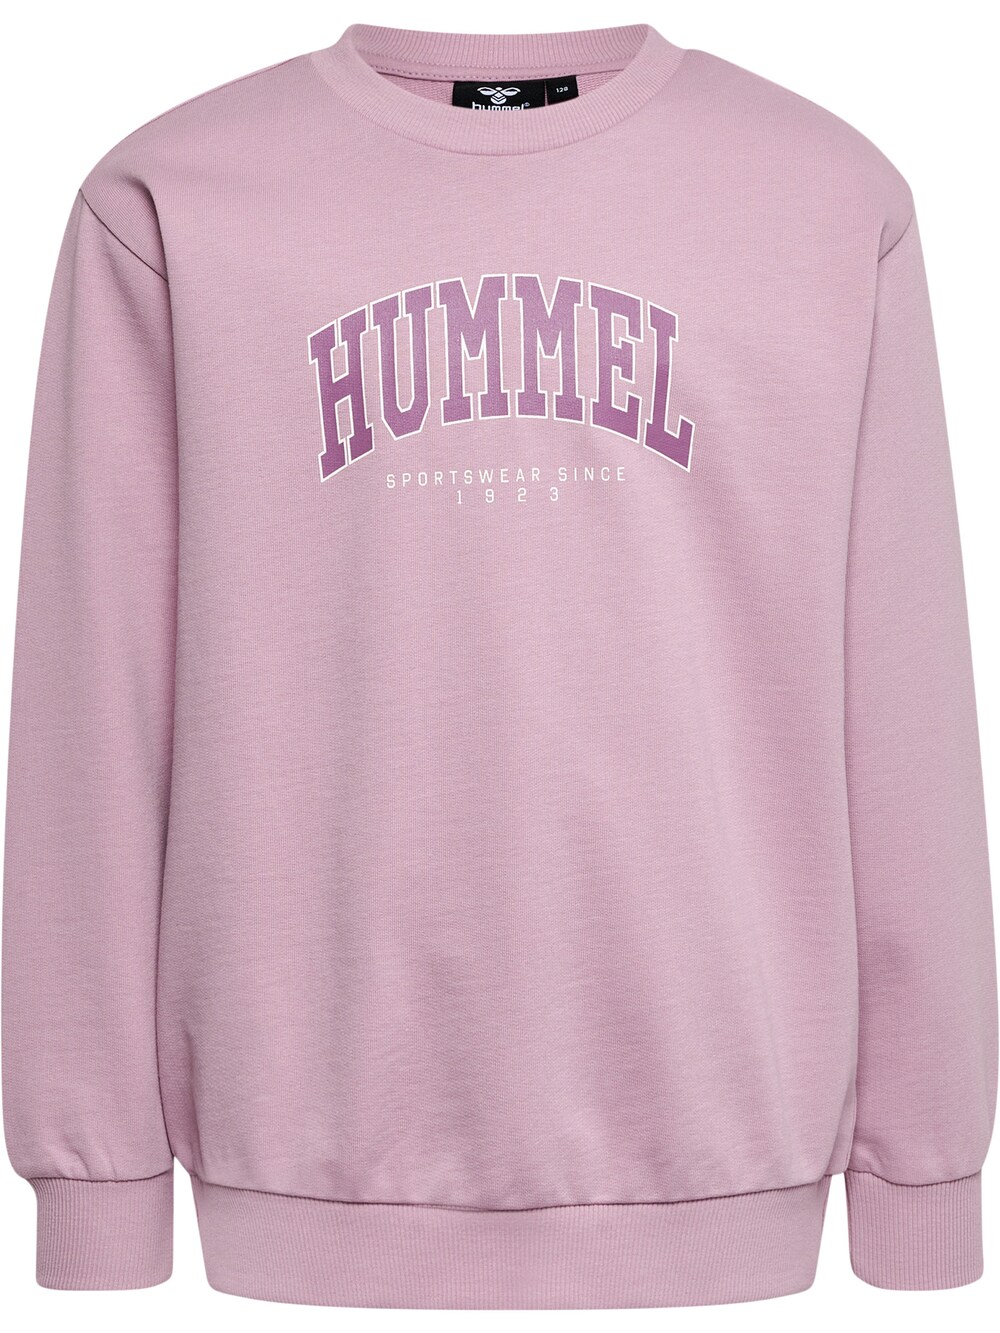 Спортивная толстовка Hummel Fast, розовый